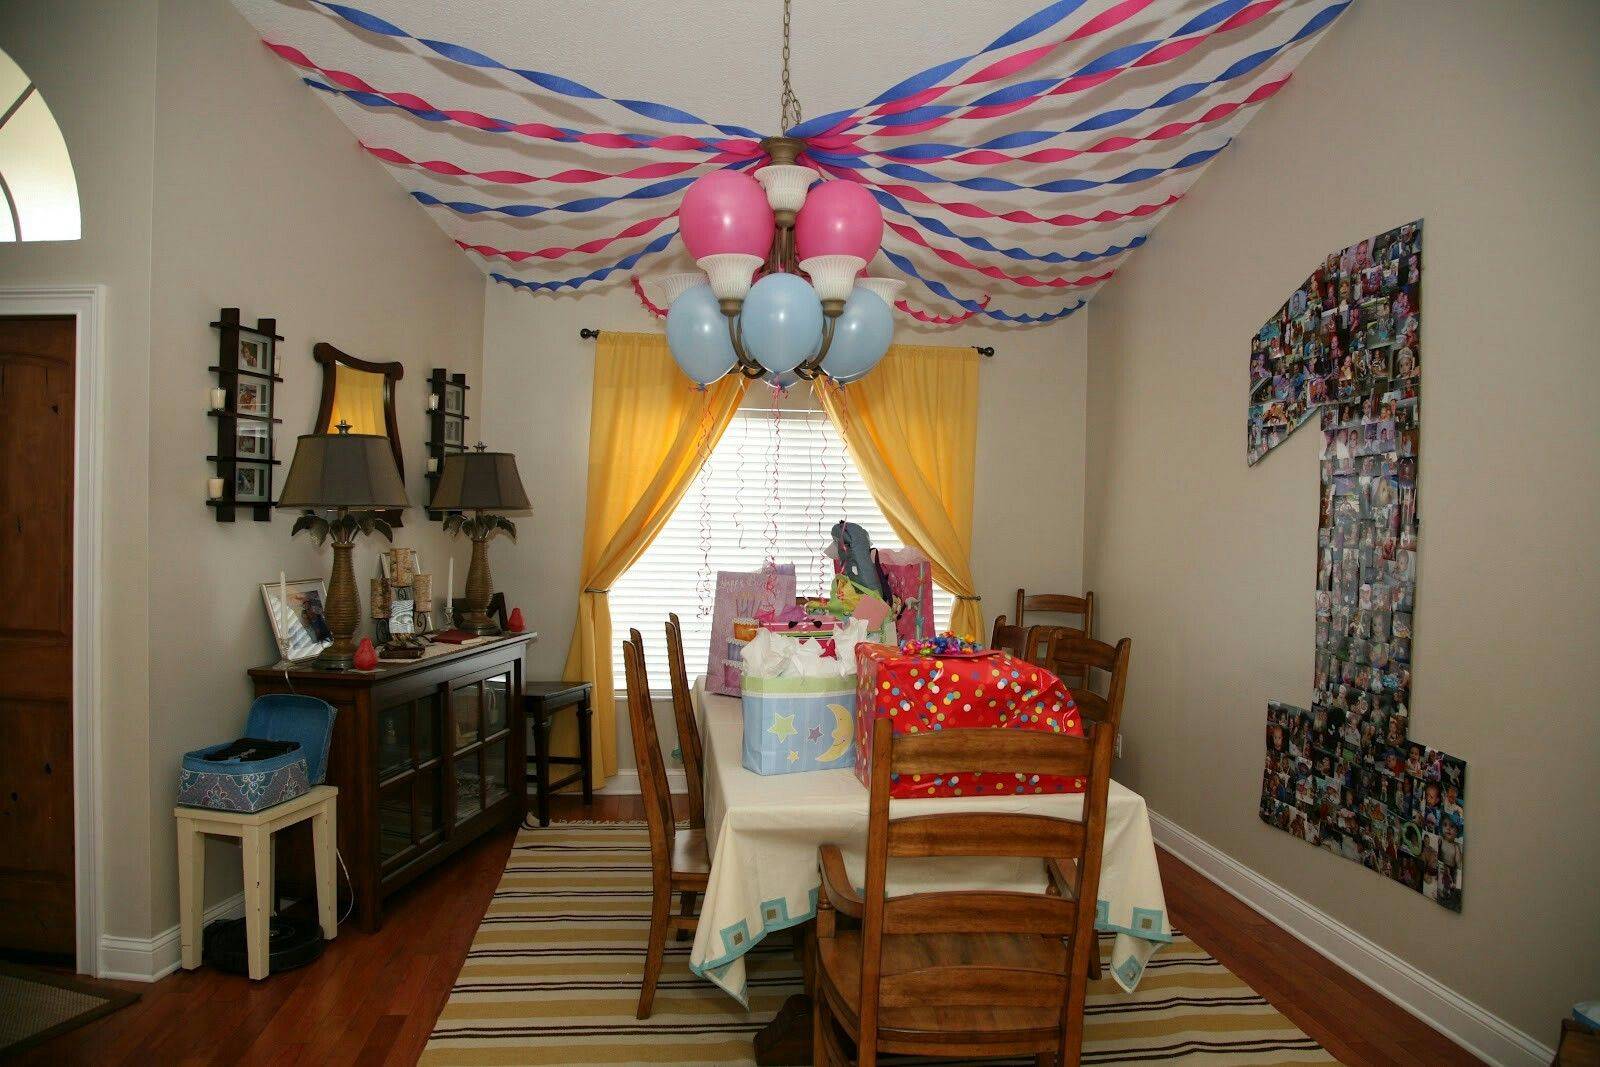 Как украсить комнату на день рождения ребенка: 10 diy идей